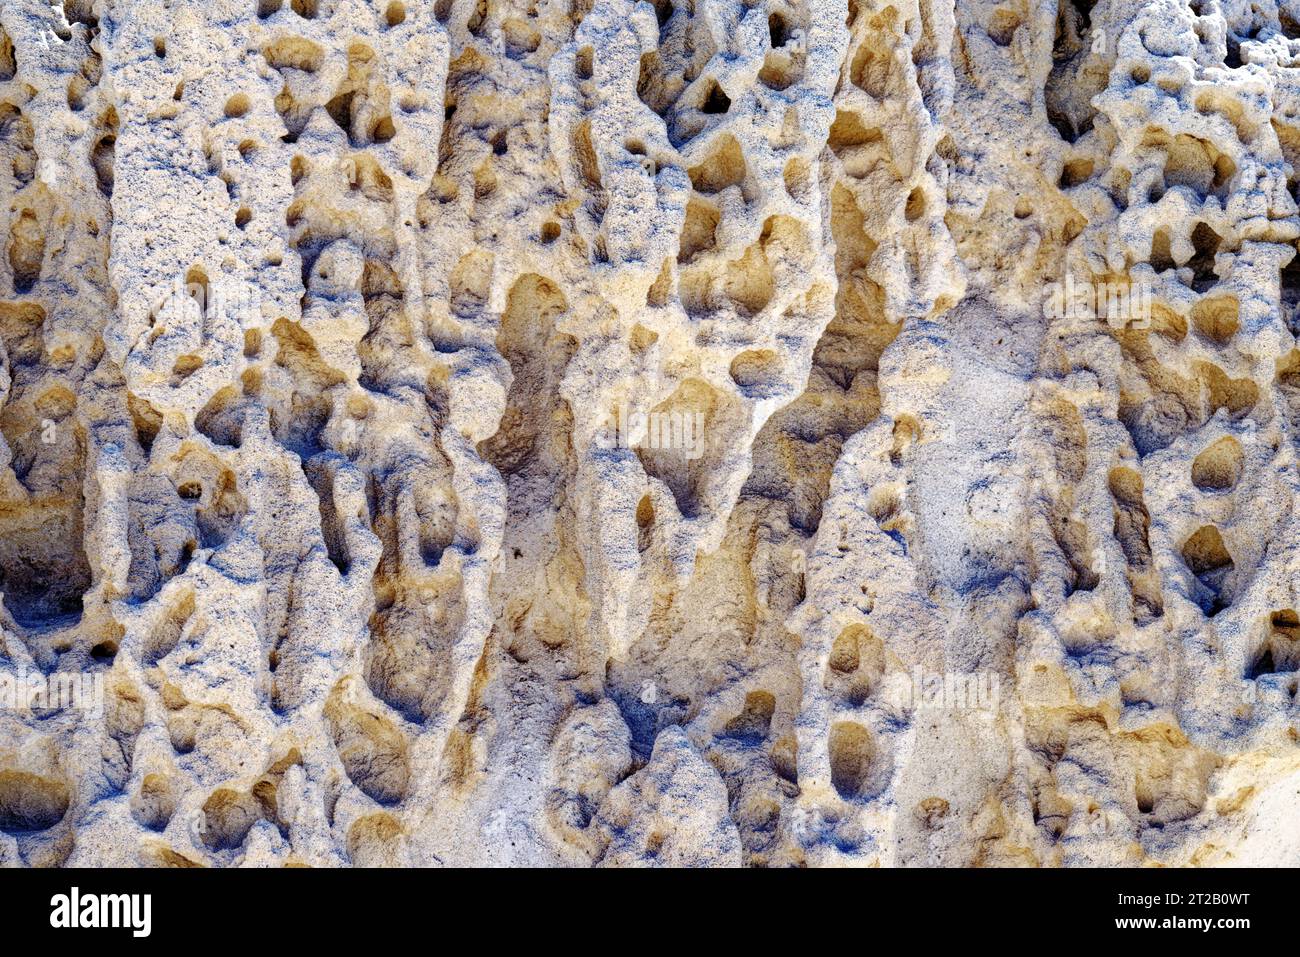 Dune del Pliocene, calcareniti formate dai resti fossili di conchiglie e alghe marine, indicatori dell'esistenza di un clima più caldo. Ajuy, Fuerteventura Foto Stock